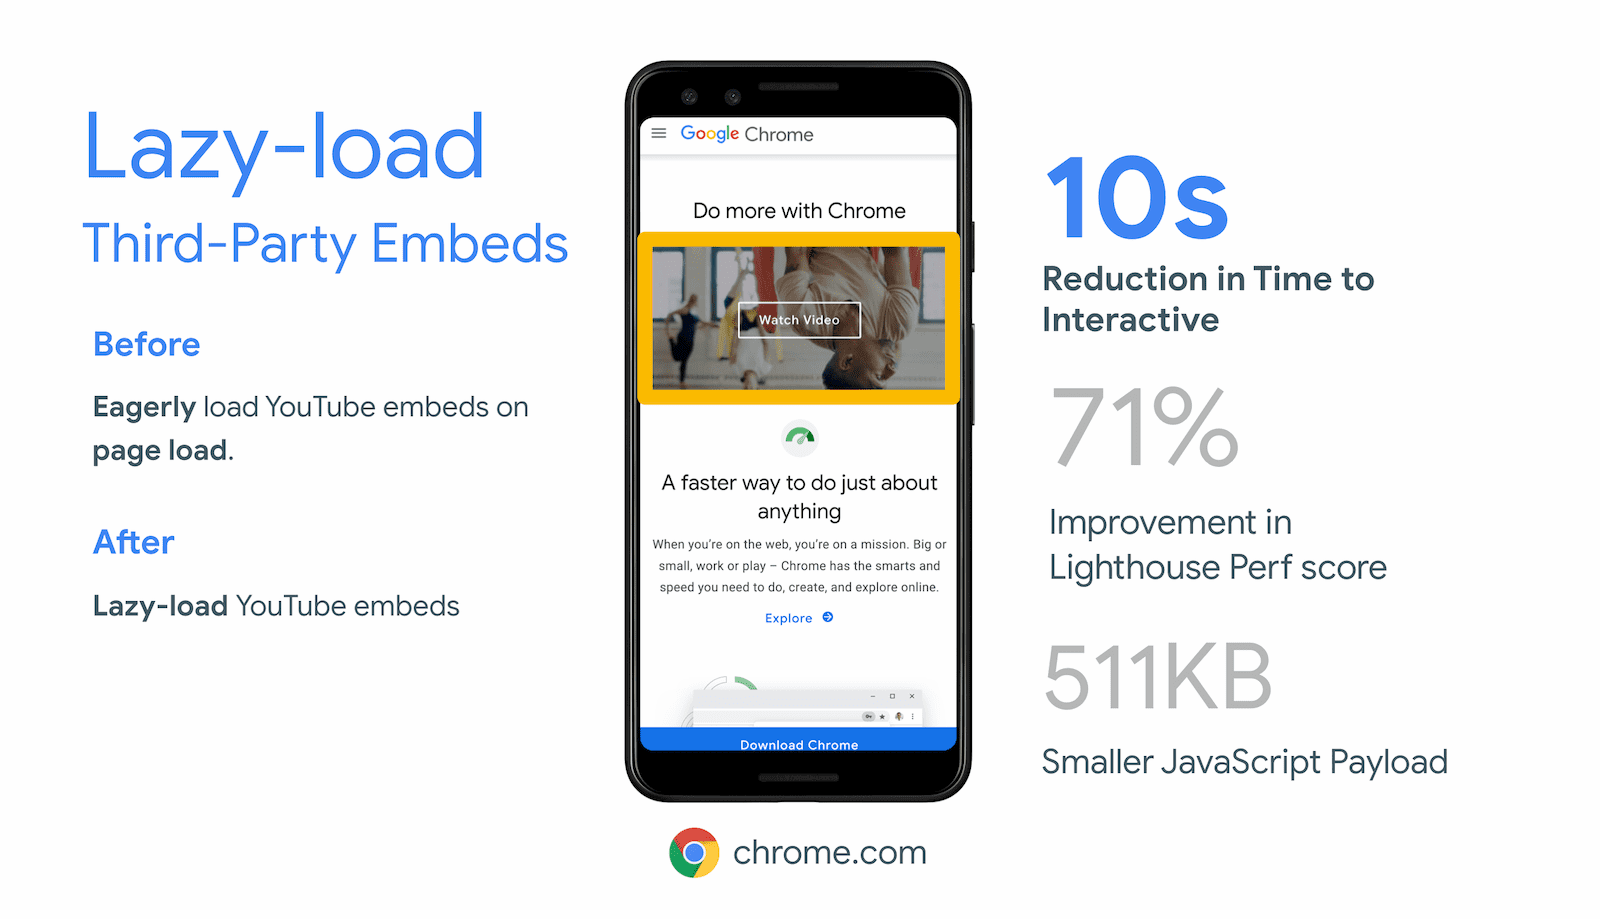 Chrome.com logró una reducción de 10 segundos en el tiempo de carga mediante la carga diferida de iframes fuera de pantalla para su incorporación de video de YouTube.